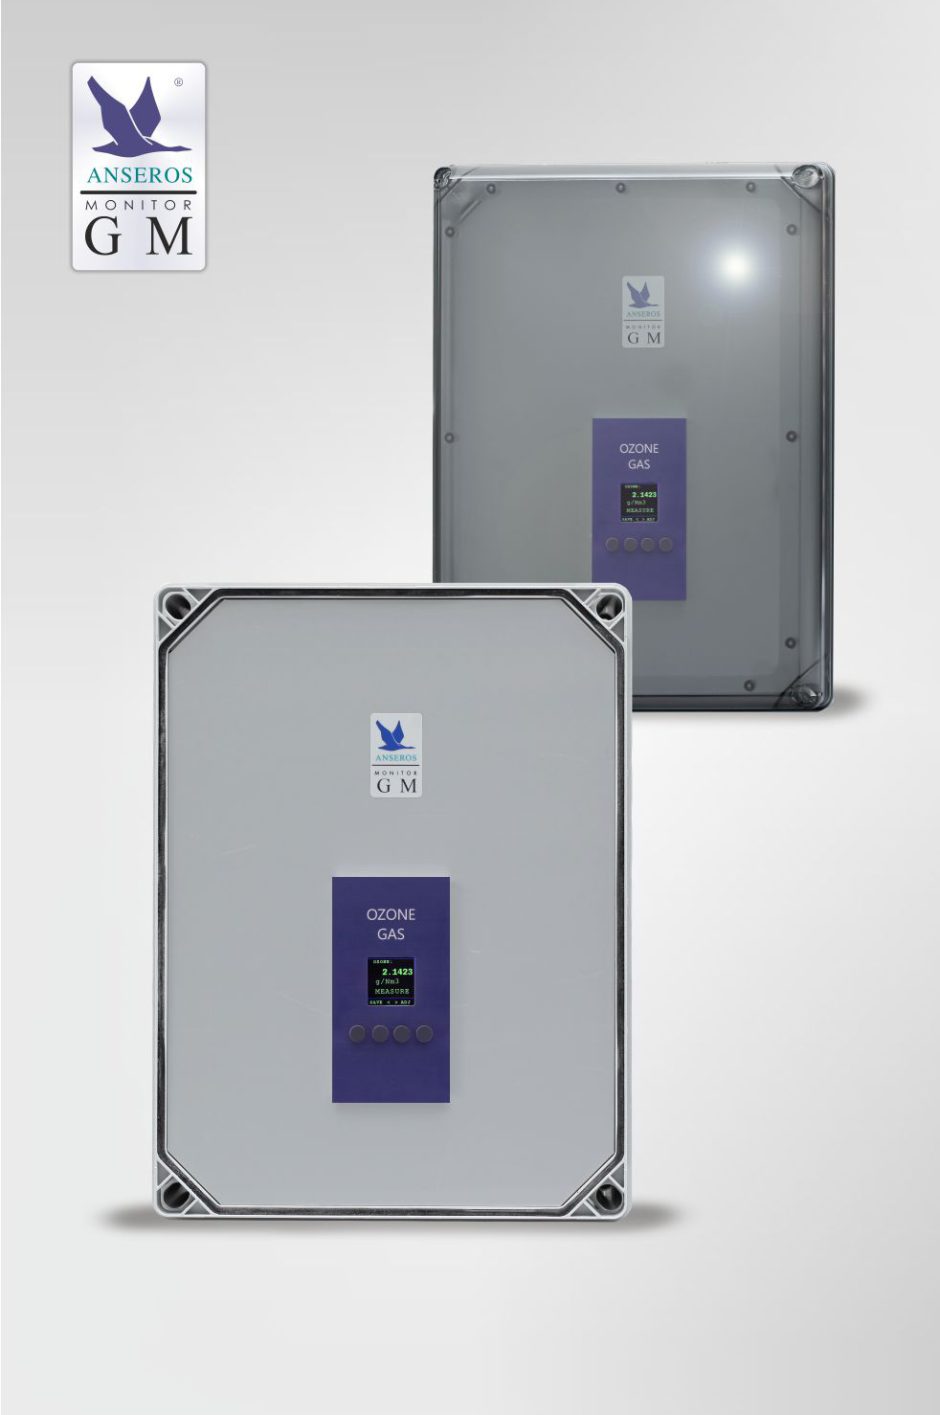 ANSEROS ozone water analyzer GM-SC-wallmount